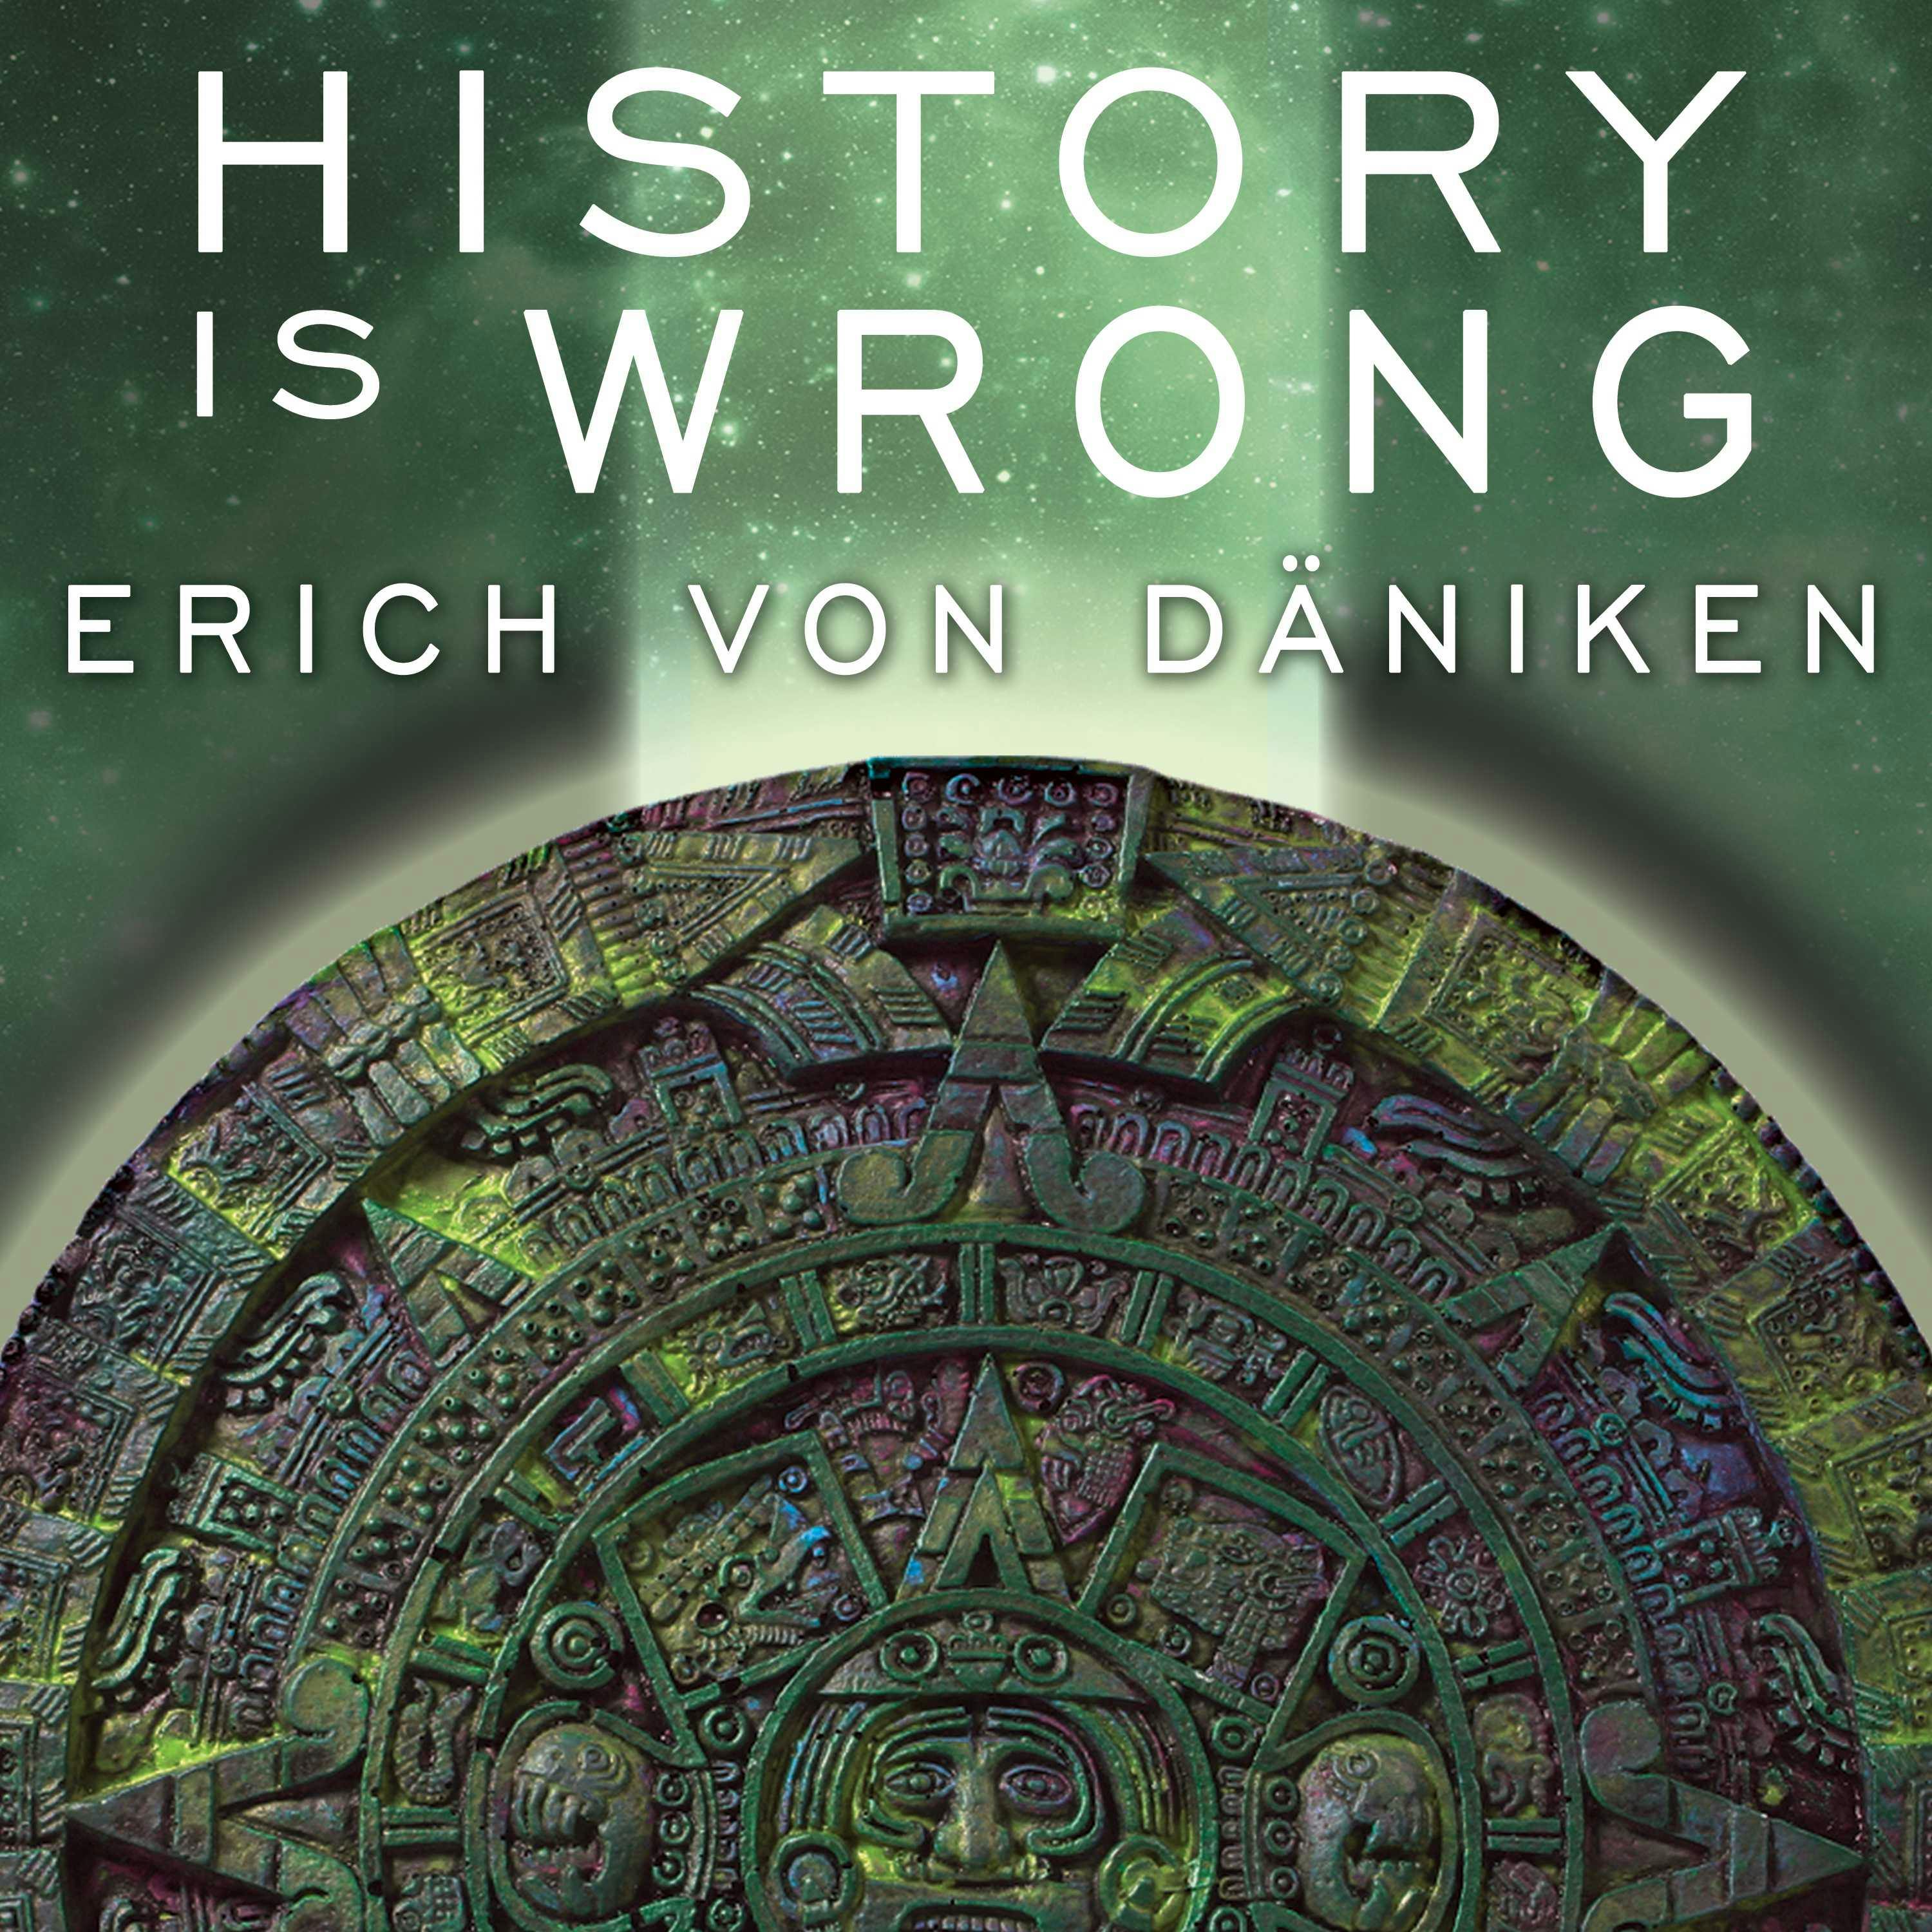 History Is Wrong - Erich von Daniken